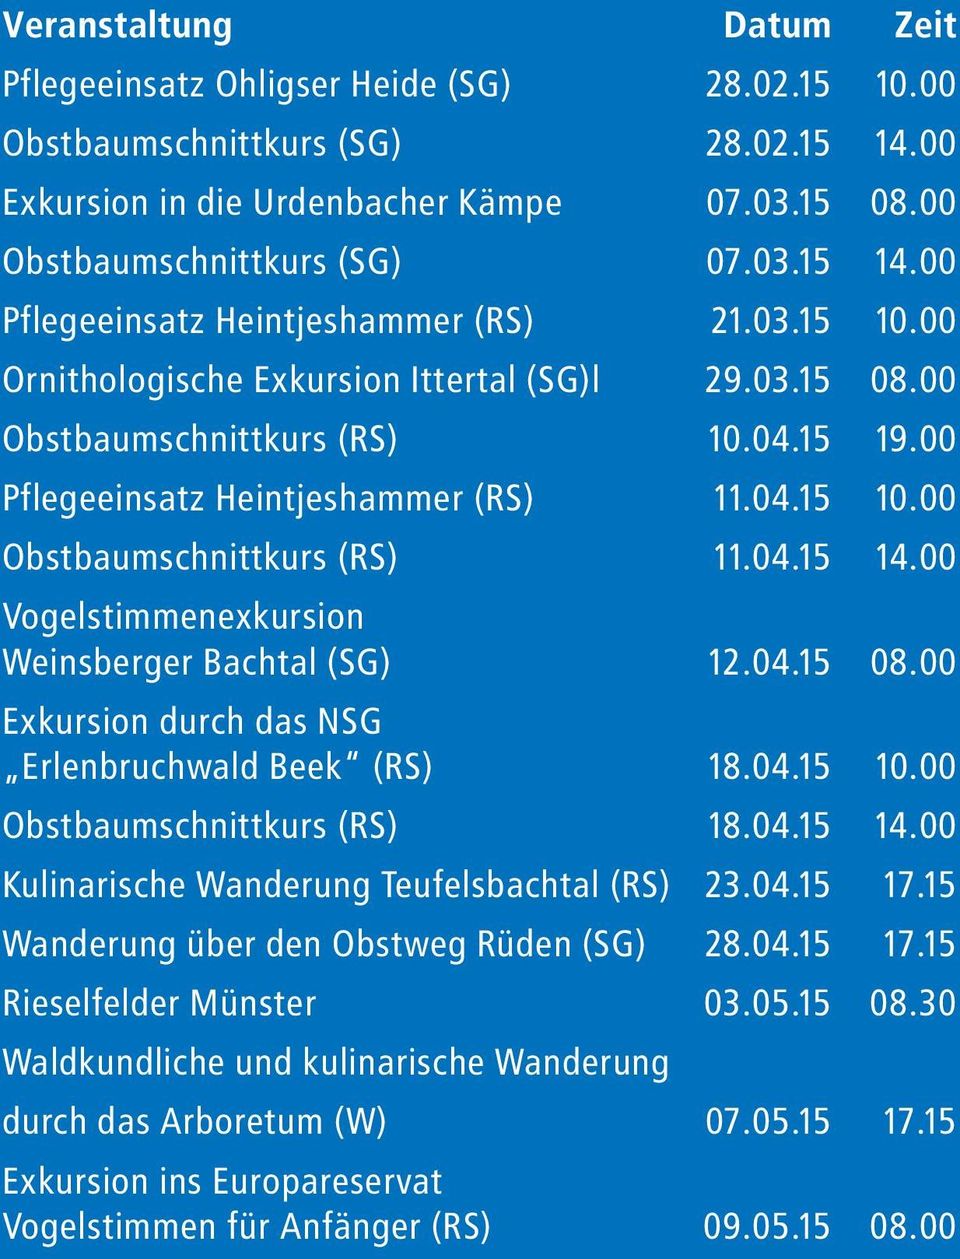 00 Vogelstimmenexkursion Weinsberger Bachtal (SG) 12.04.15 08.00 Exkursion durch das NSG Erlenbruchwald Beek (RS) 18.04.15 10.00 Obstbaumschnittkurs (RS) 18.04.15 14.